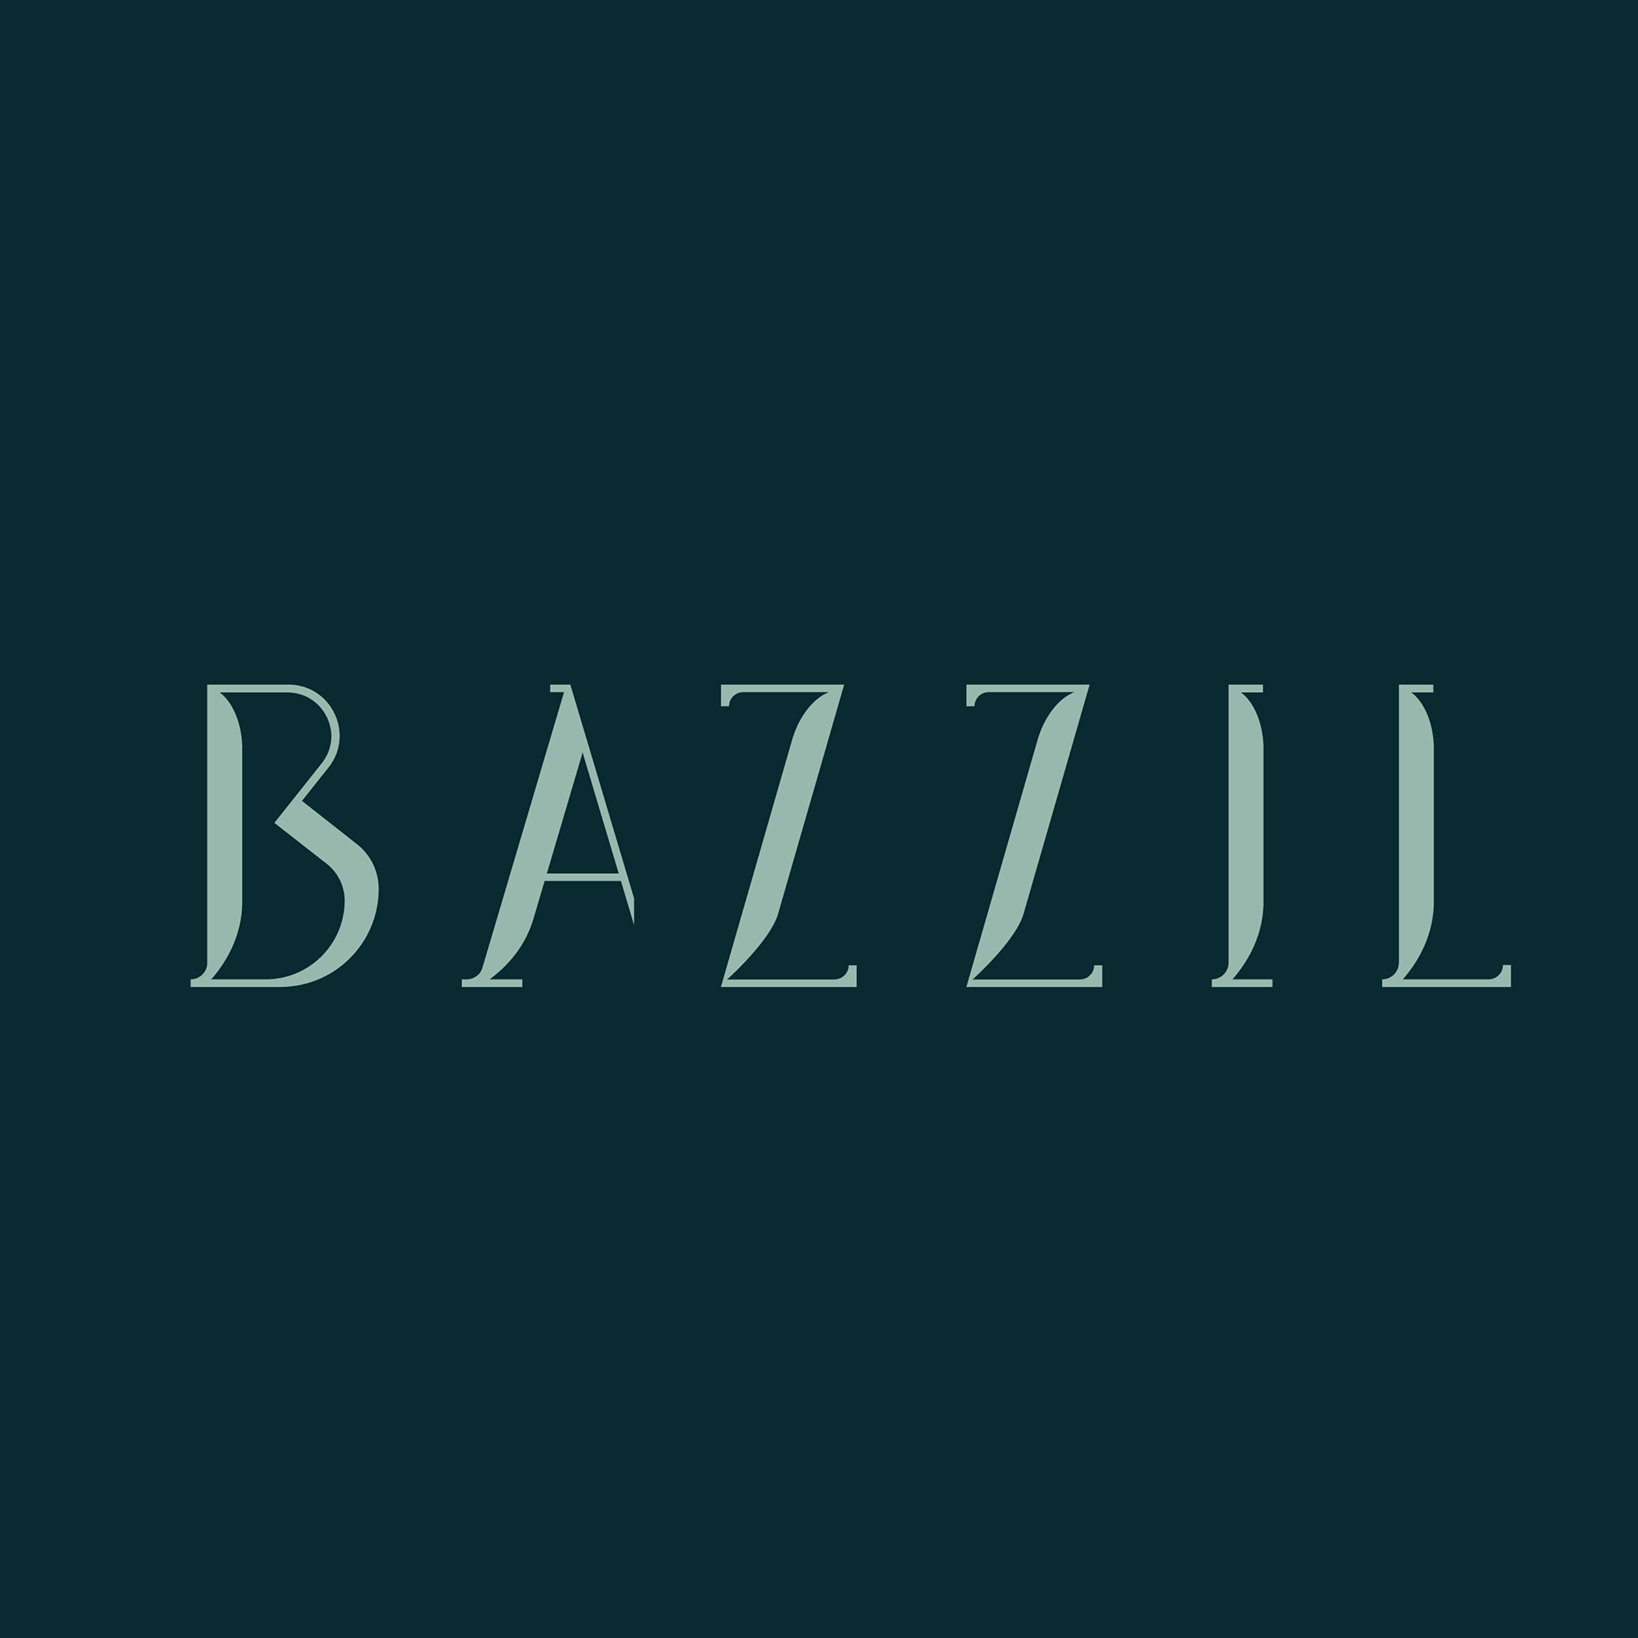 Restaurant Bazzil